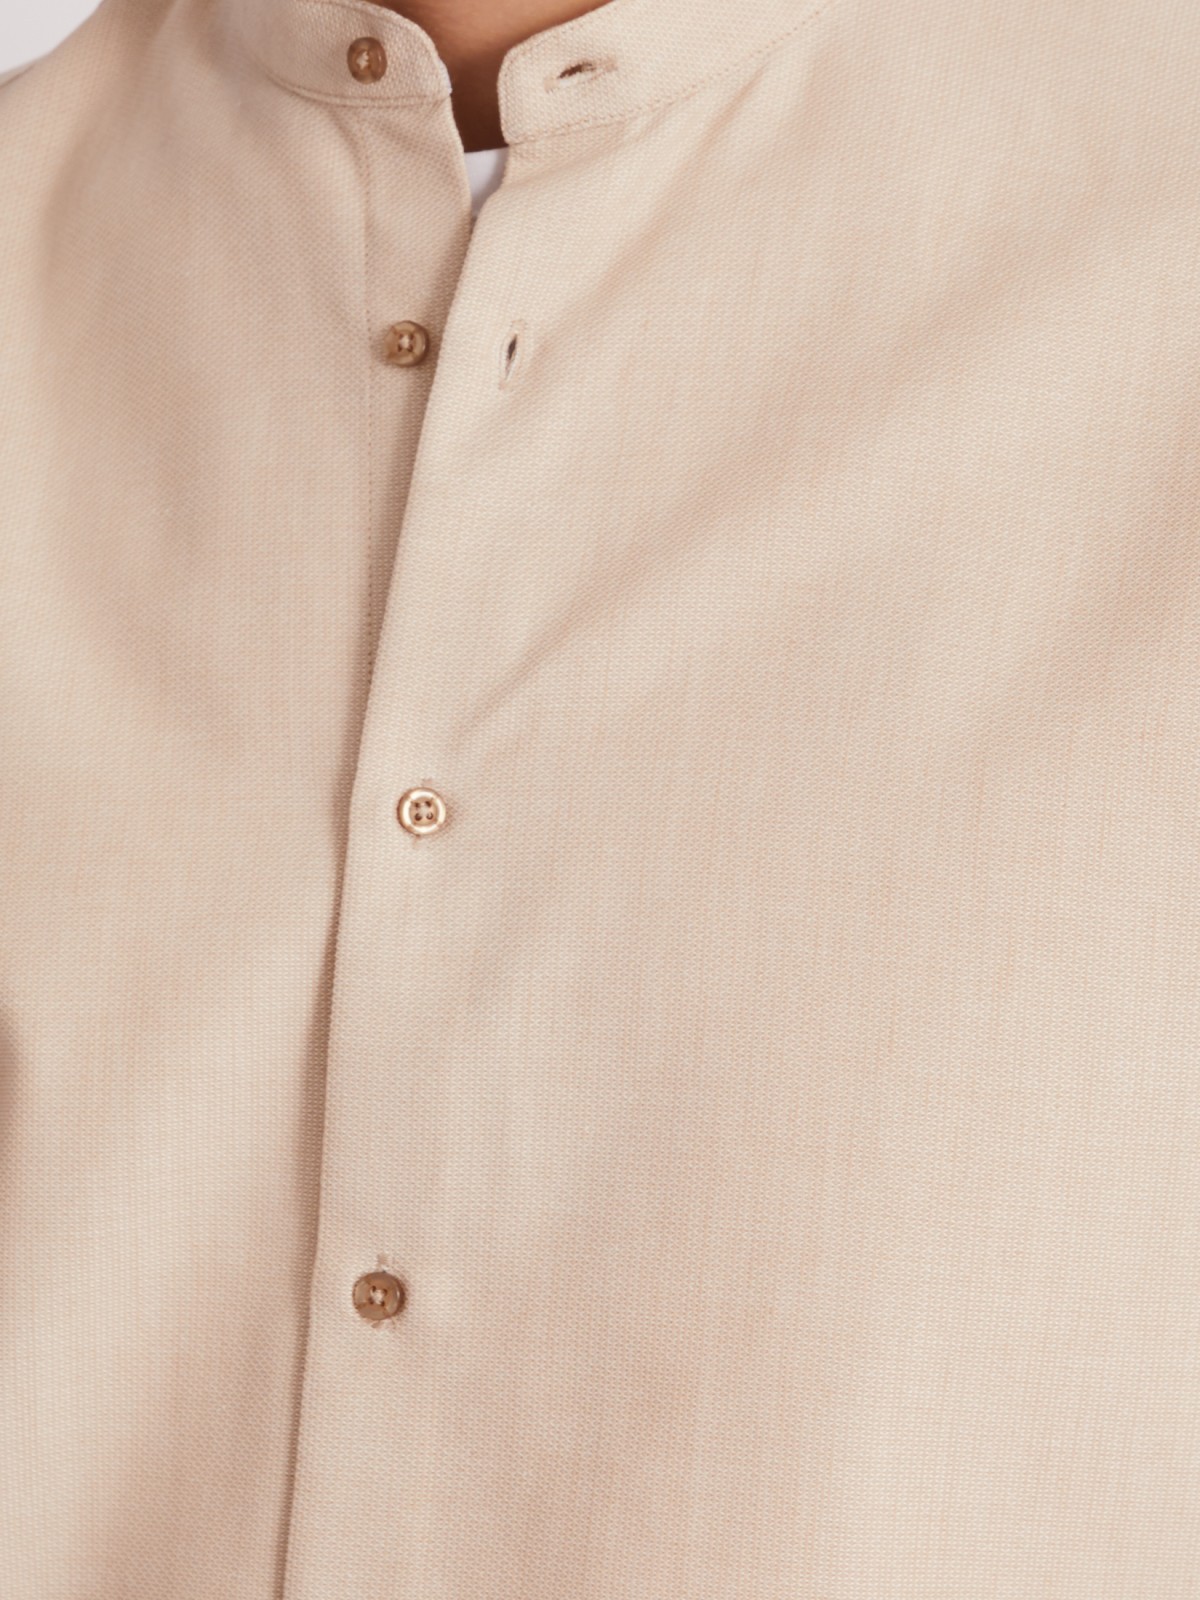 Офисная рубашка с воротником-стойкой и длинным рукавом zolla 013312159023, цвет бежевый, размер S - фото 3